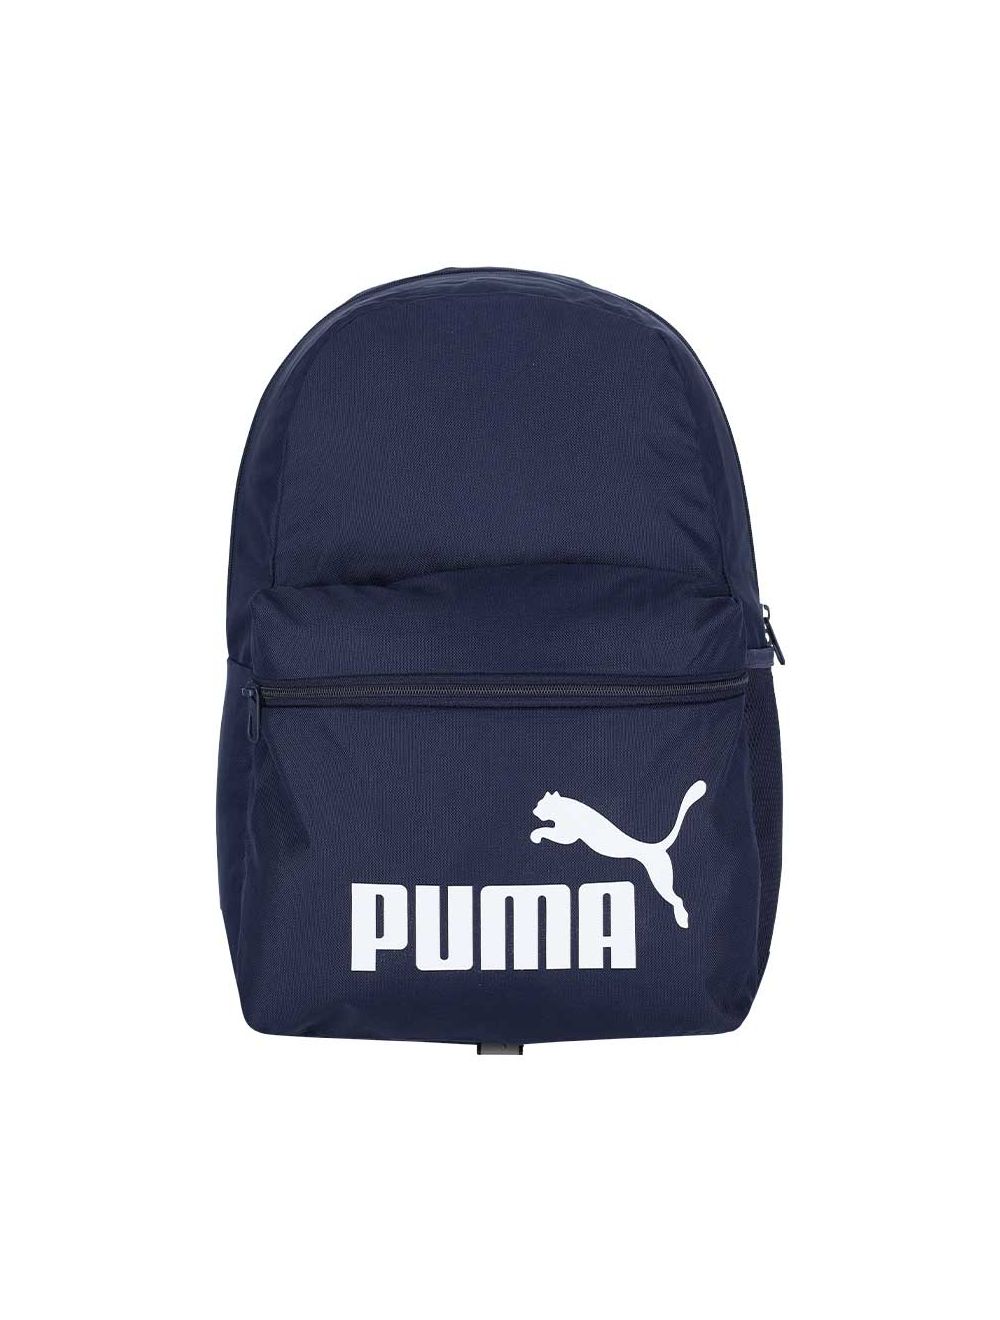 PUMA Forecast Multitude Backpack Sling Shoulder Bag (Blue Multi) | eBay